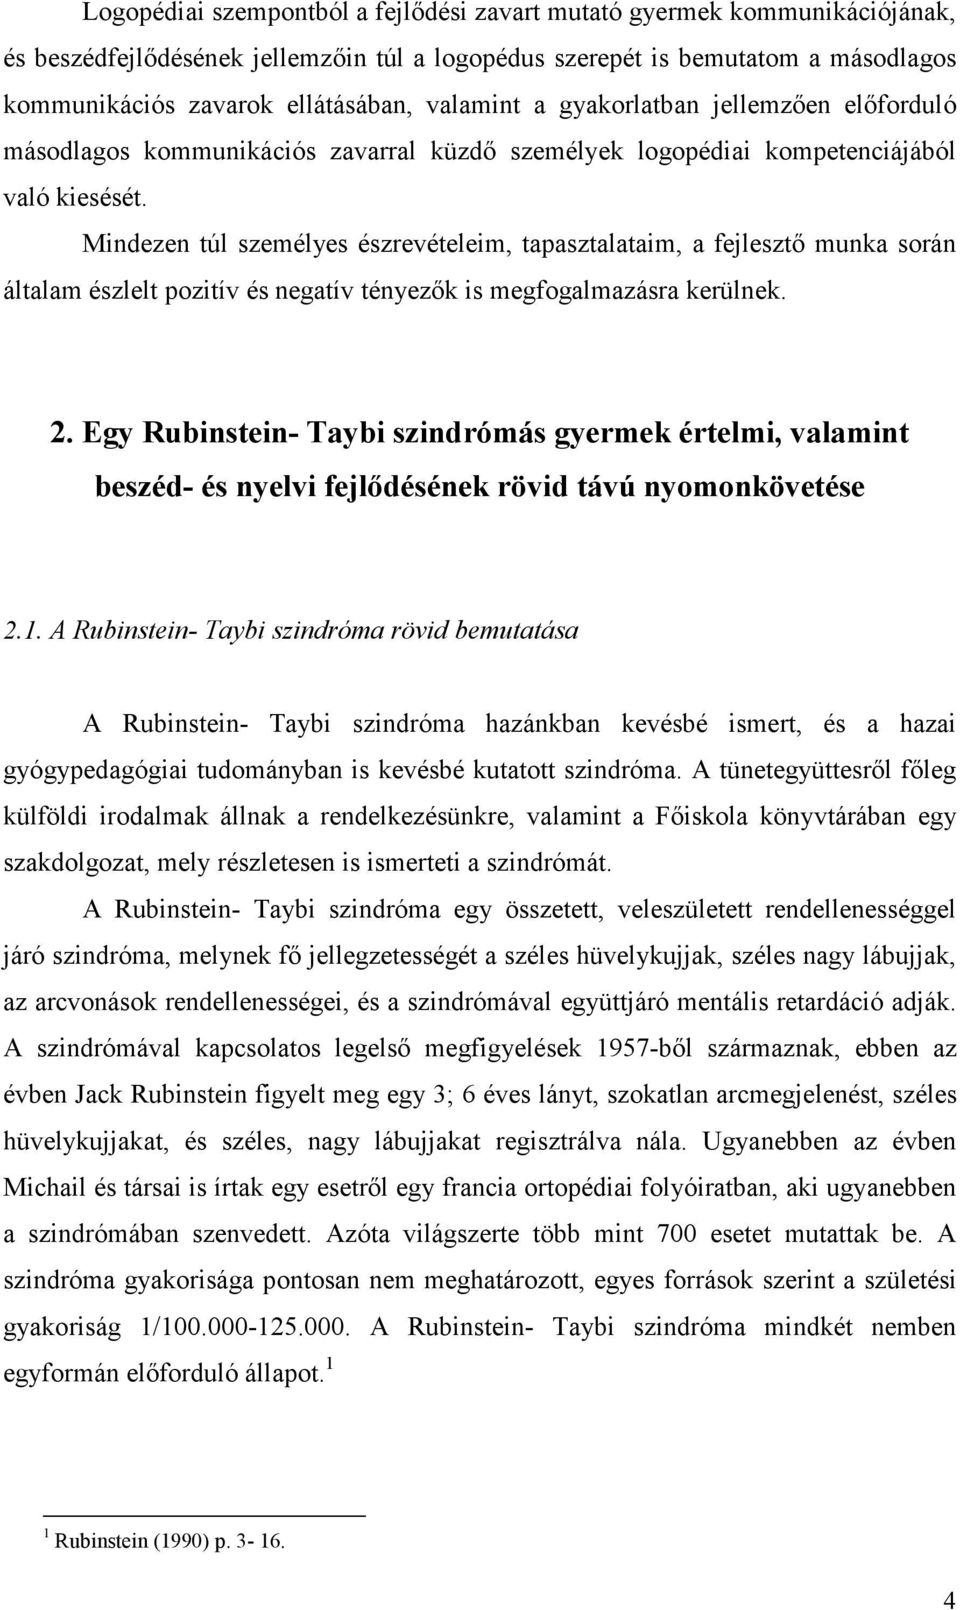 Egy Rubinstein- Taybi szindrómás gyermek fejlıdési profiljának elemzése  rövid távú nyomonkövetéses vizsgálatok alapján - PDF Ingyenes letöltés